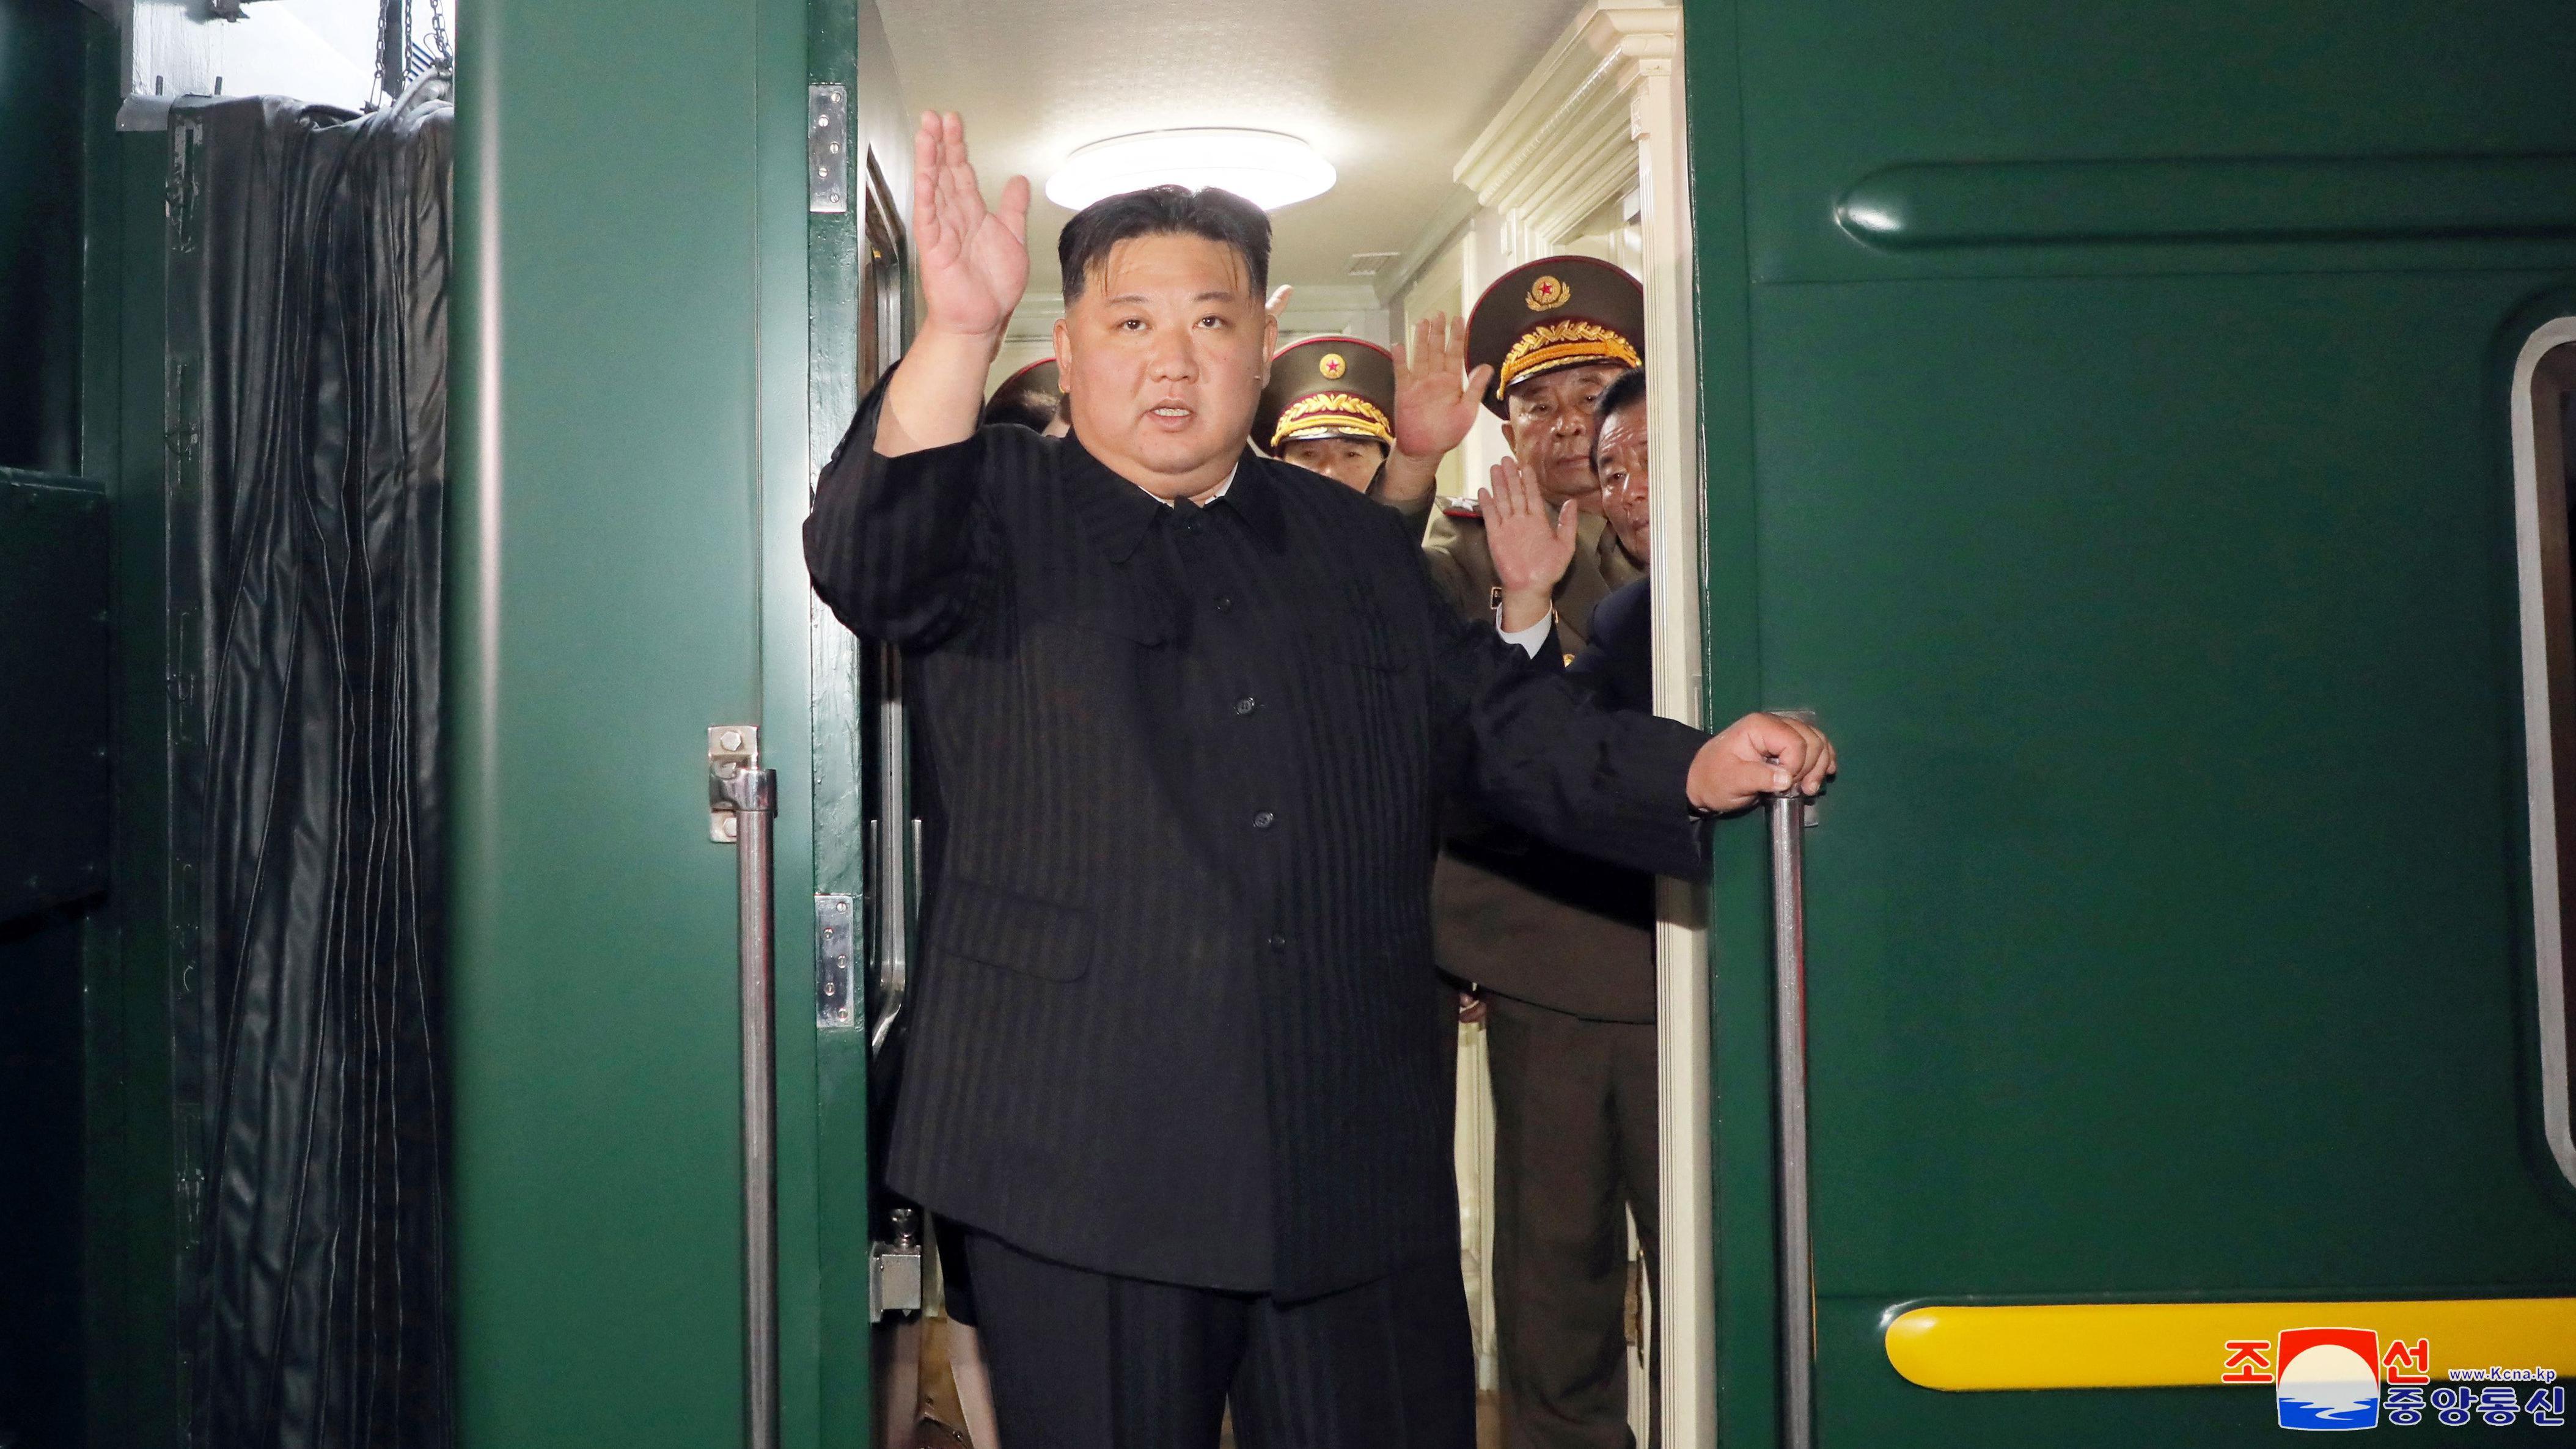 La agencia estatal de noticias norcoreana, KCNA, distribuyó imágenes de Kim Jong-un abordando el tren para su viaje a la Federación Rusa.